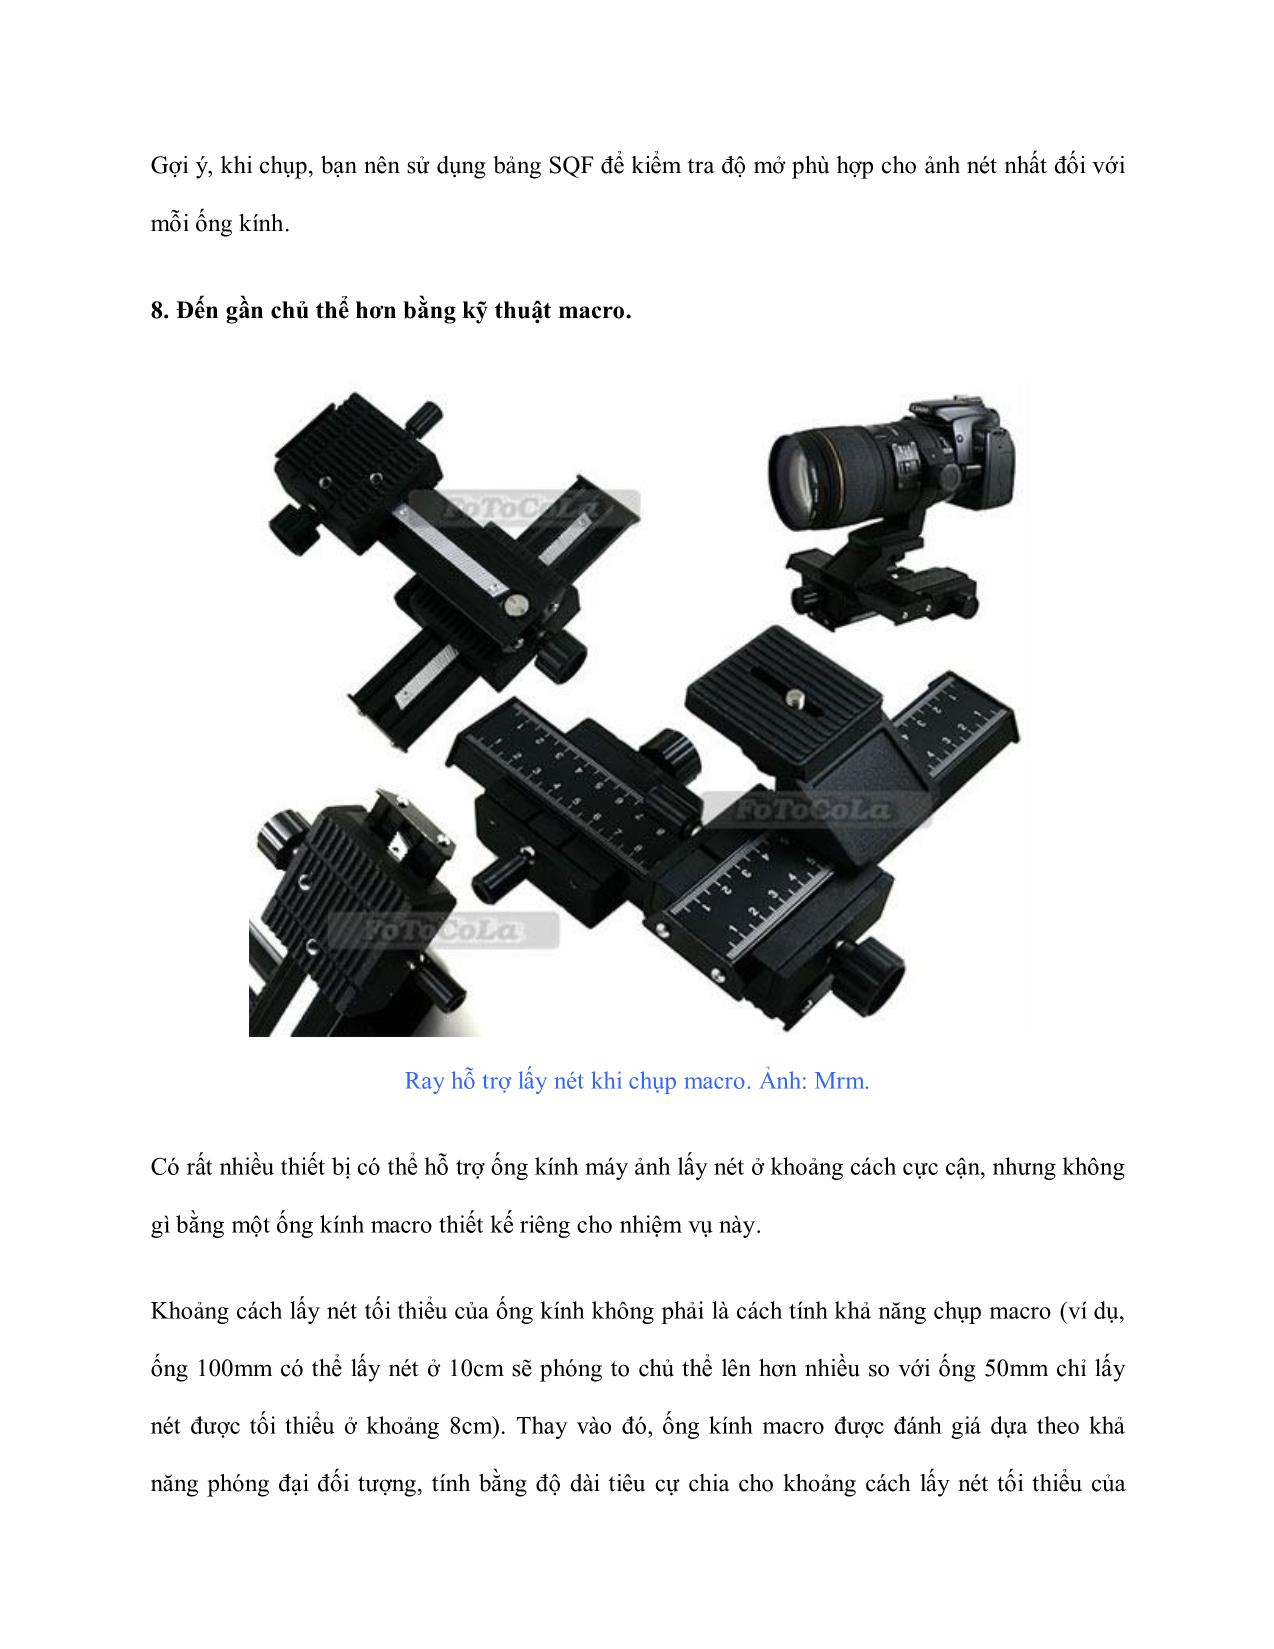 10 Điều về ống kính máy ảnh trang 9